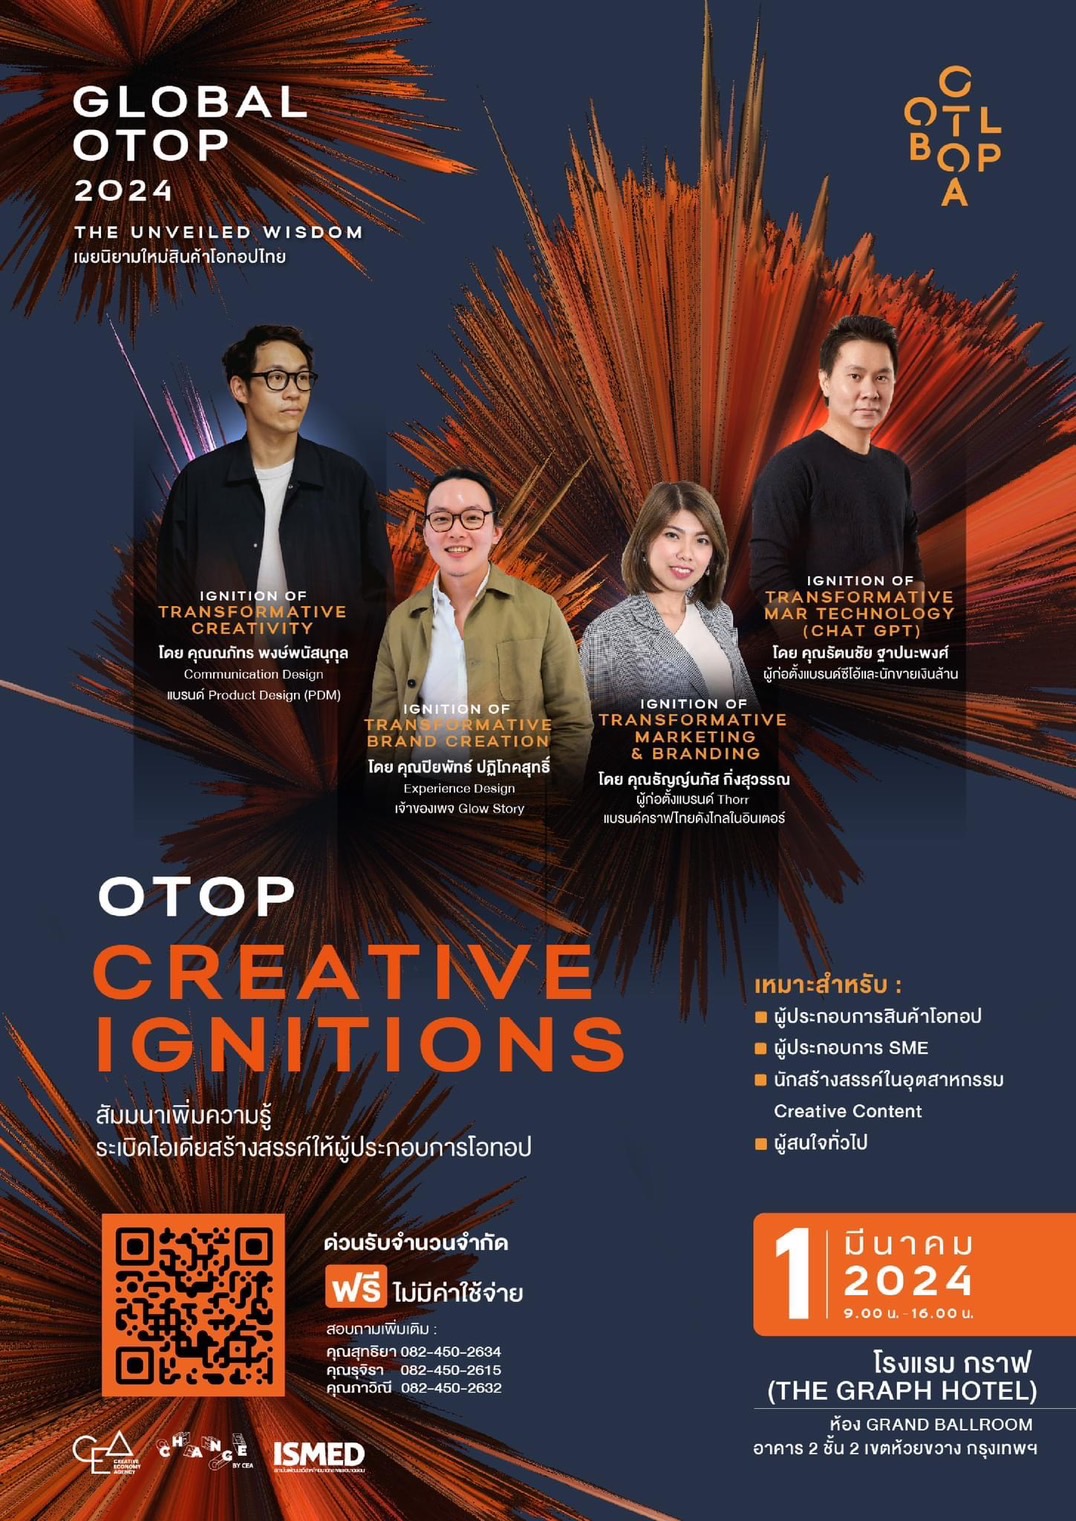 ขอเชิญชวนผู้ที่สนใจเข้าร่วมอบรม ระเบิดไอเดียสร้างสรรค์ กิจกรรม OTOP Creative lignitions 